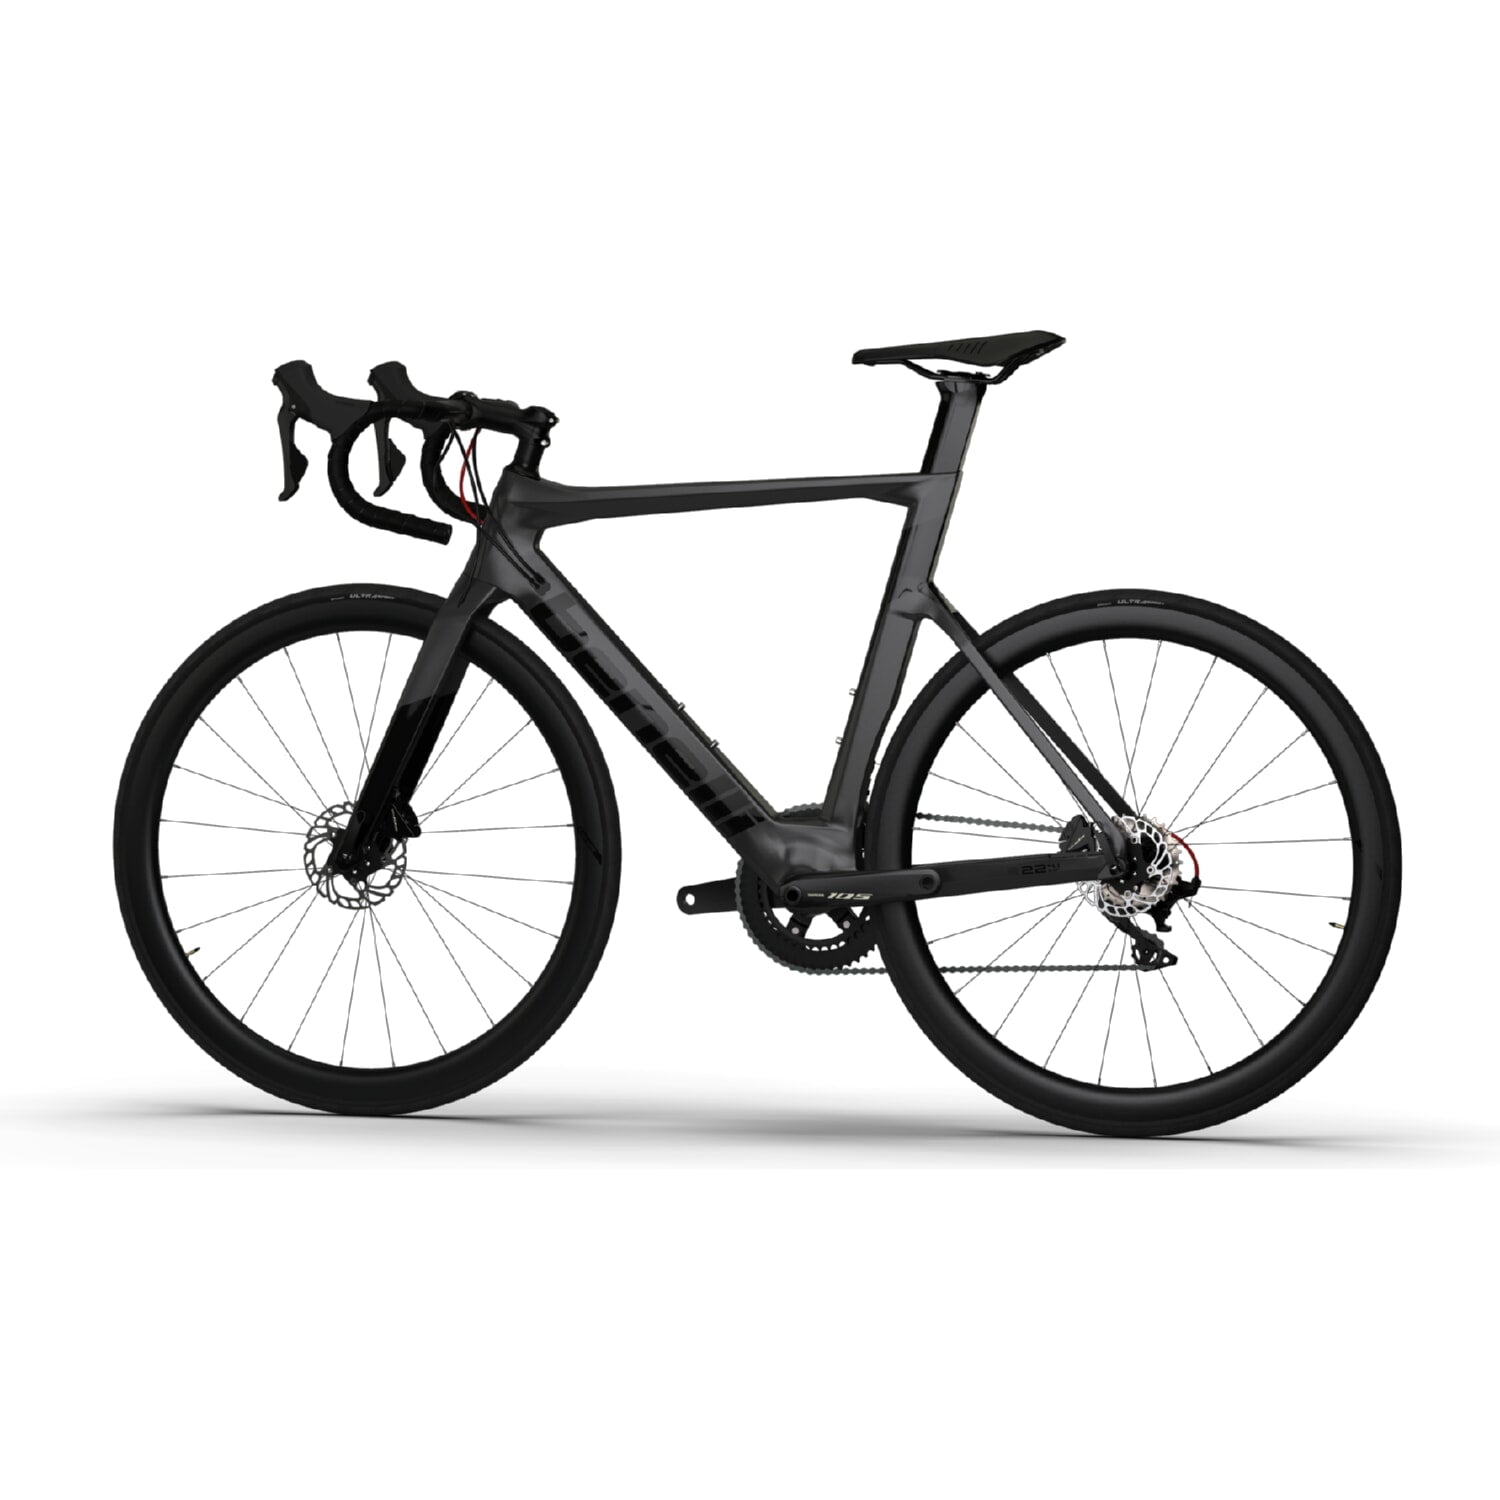 Bicicleta Ruta Benelli Carb.(R22 4.0 Exp Carb Disk) Color Gris Oscuro/Negro Talla L